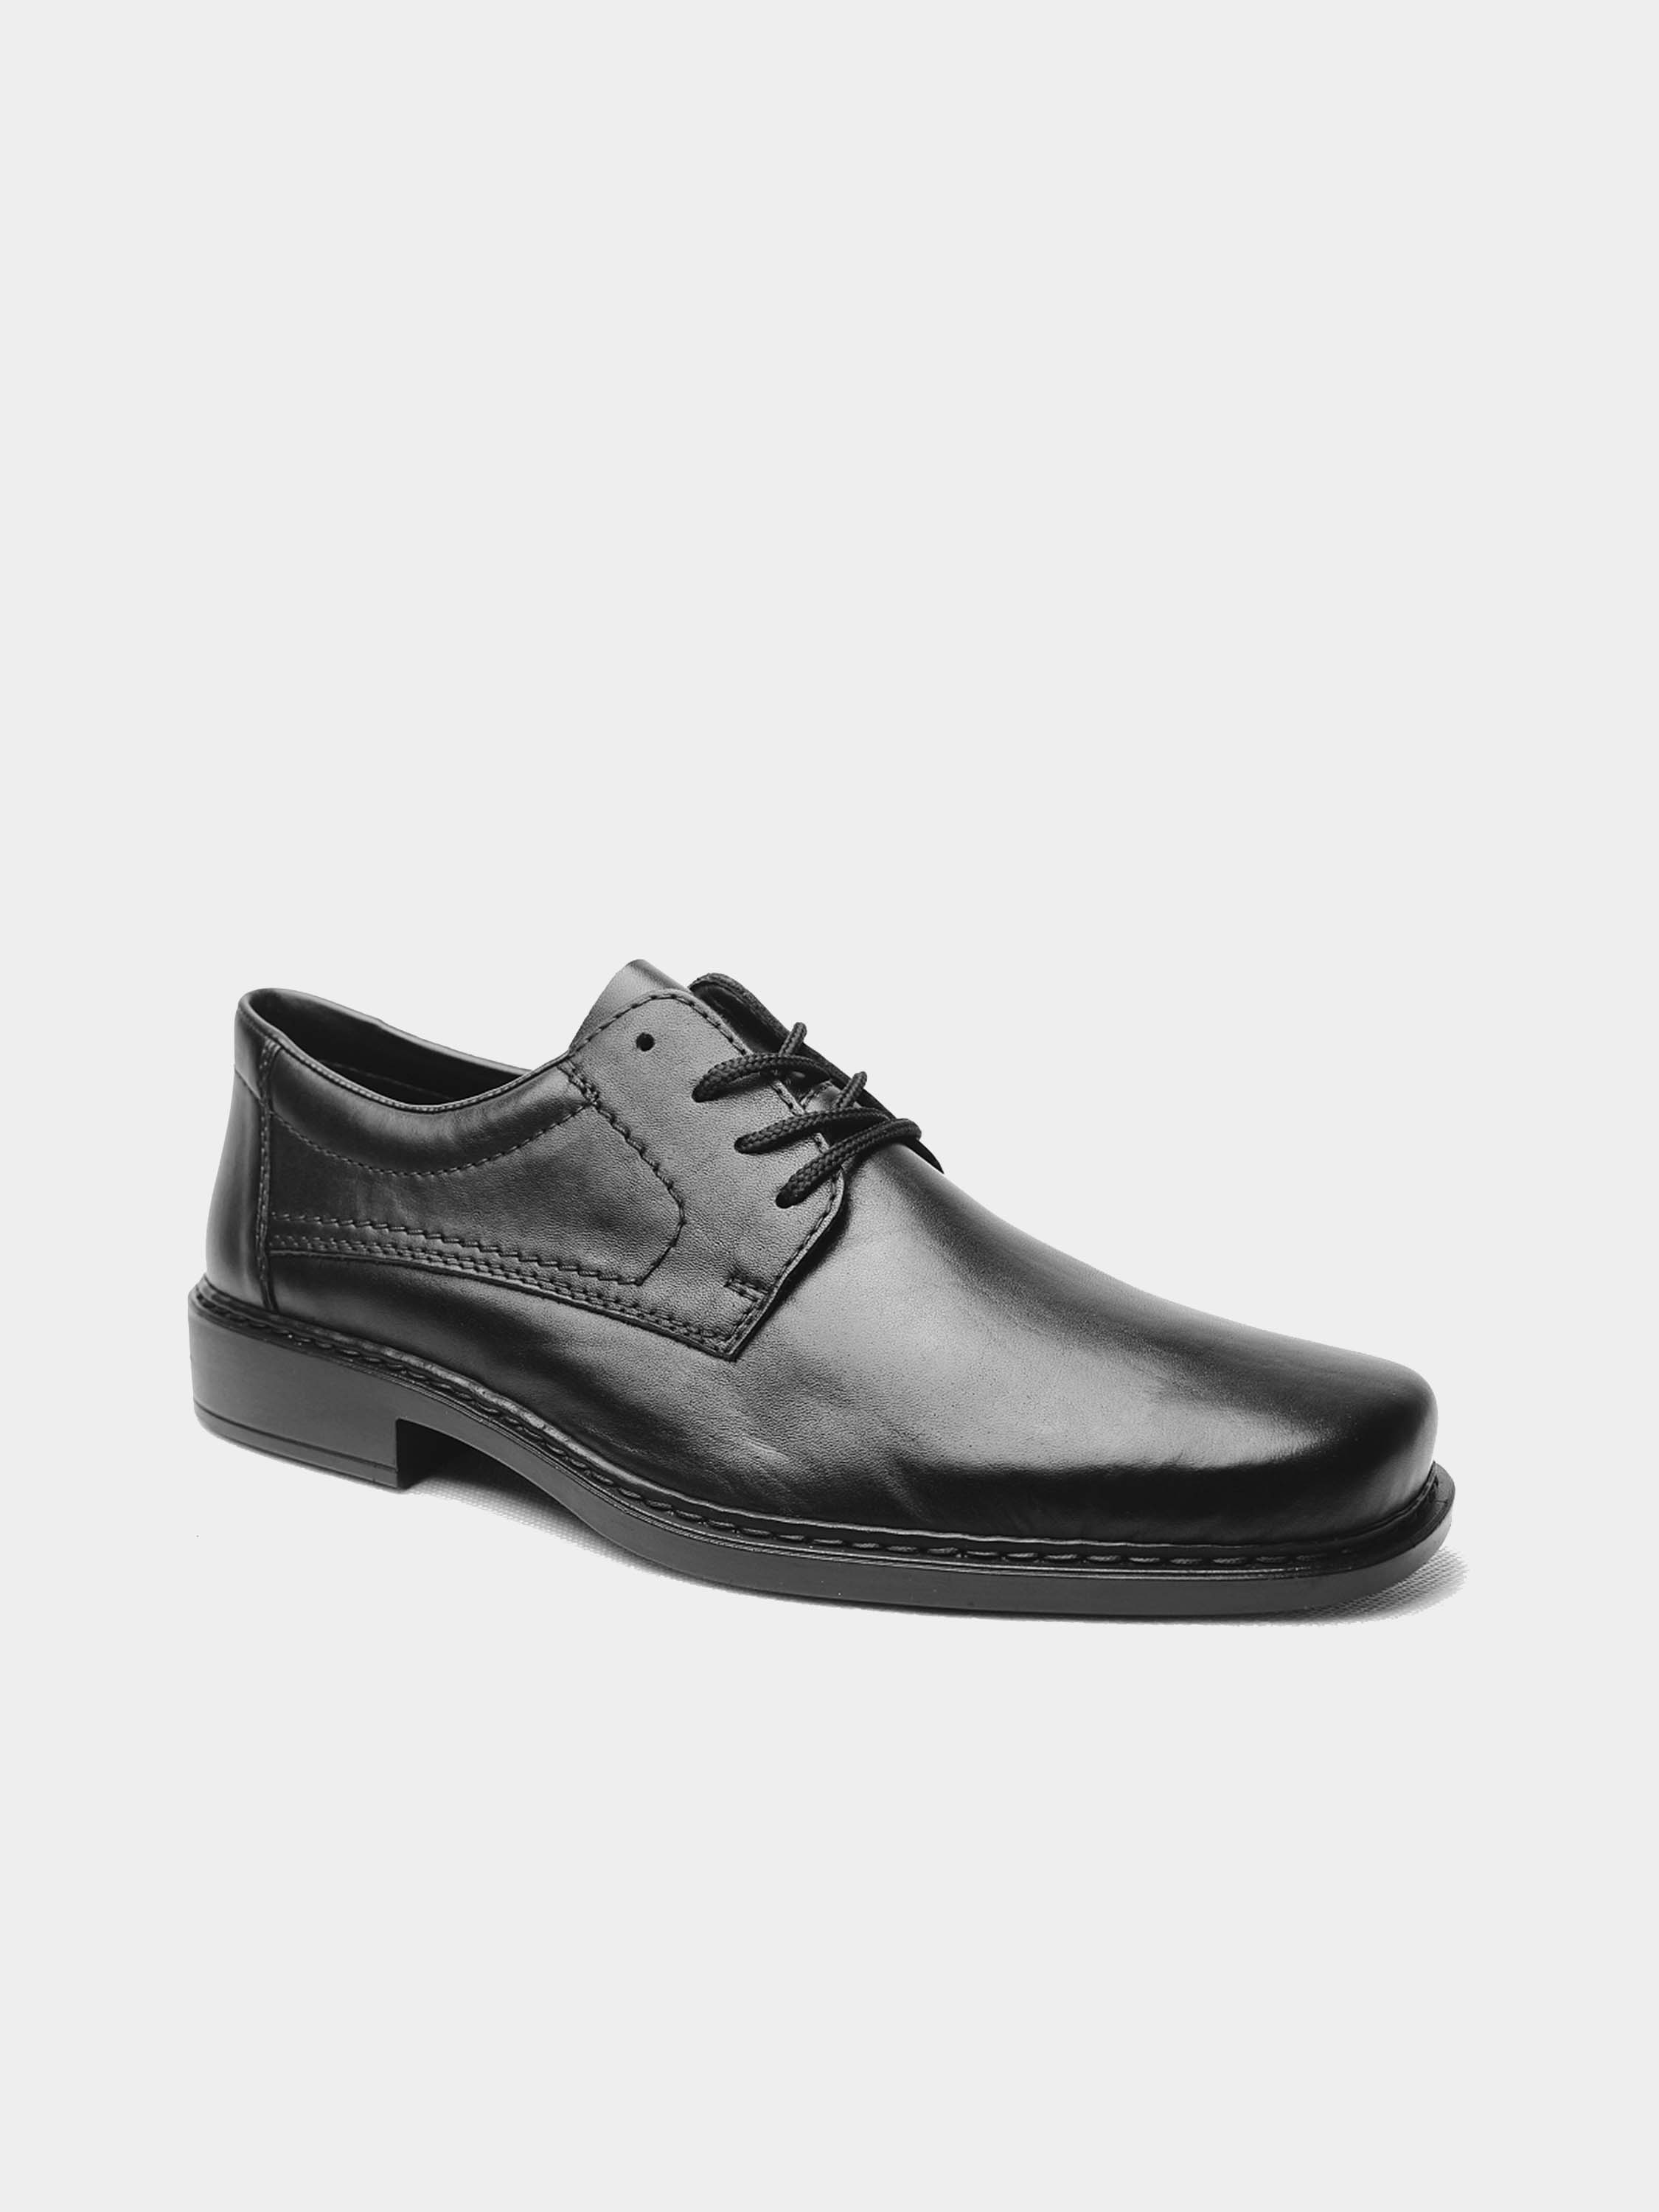 Rieker B0810-00 Men's Square Toe Formal Leather Shoes #color_Black